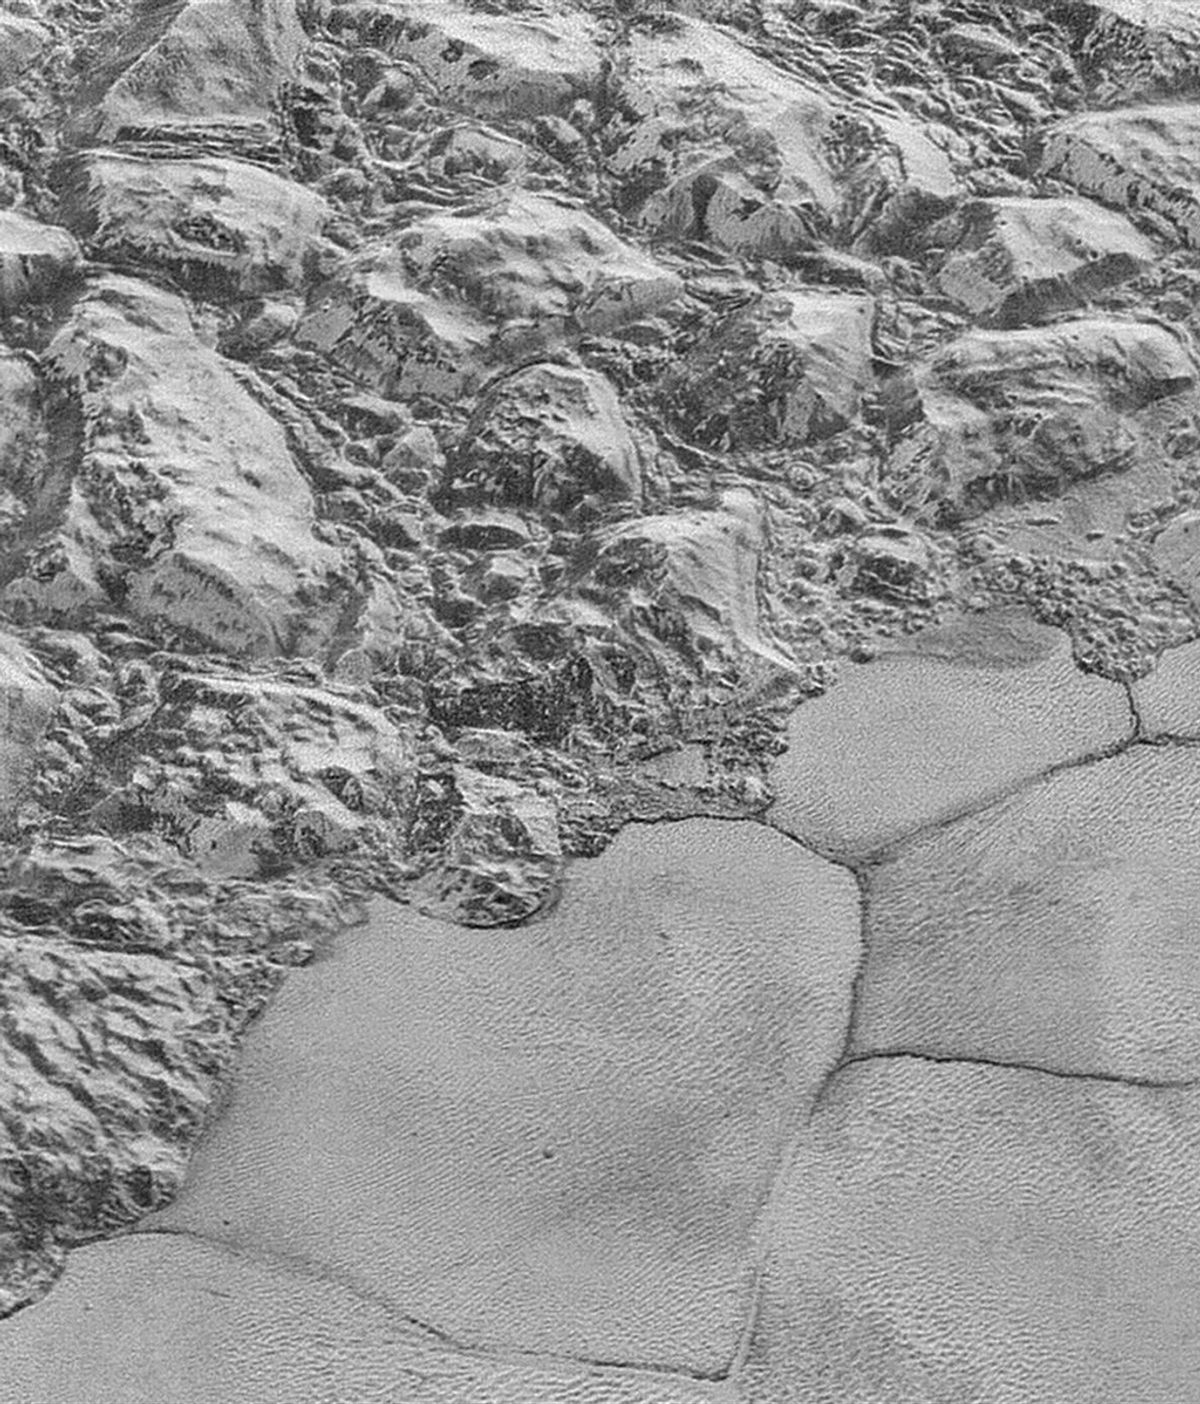 Las mejores imágenes de Plutón